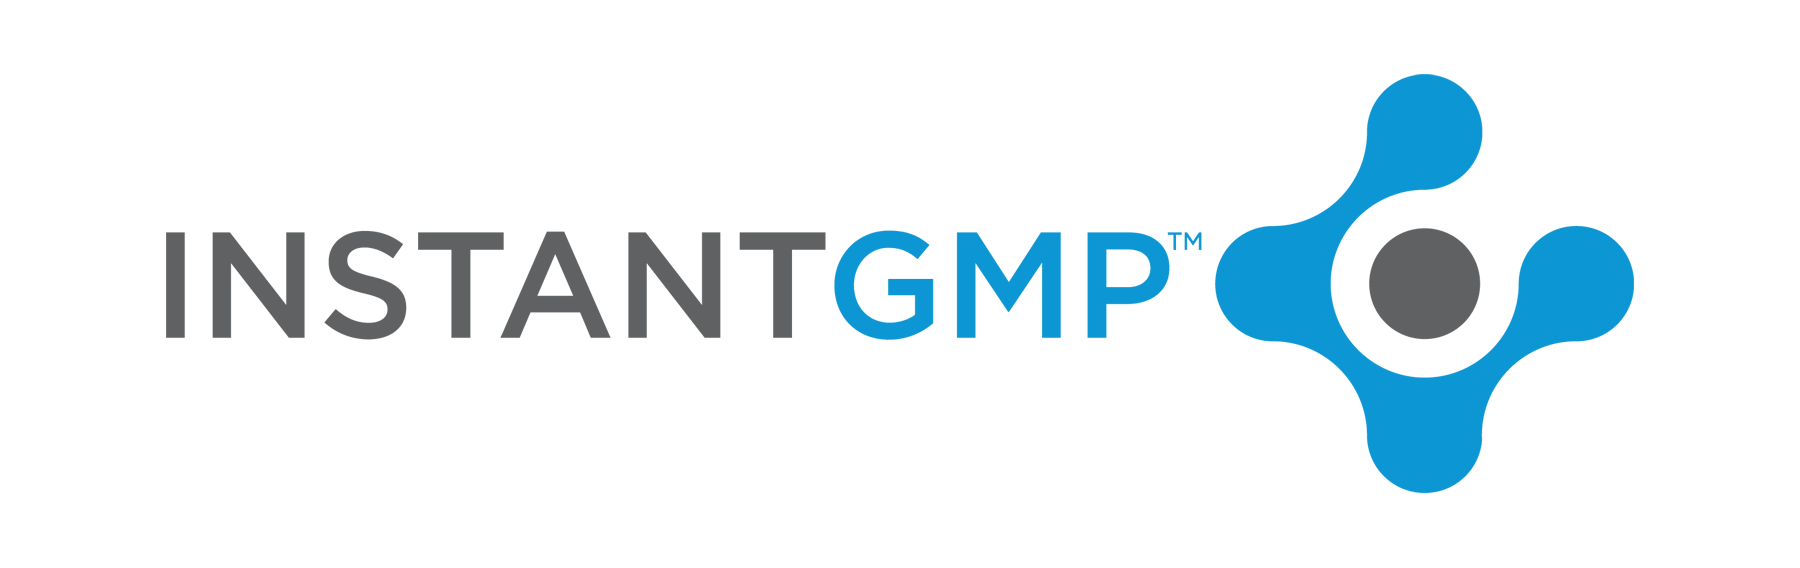 InstantGMP, Inc.